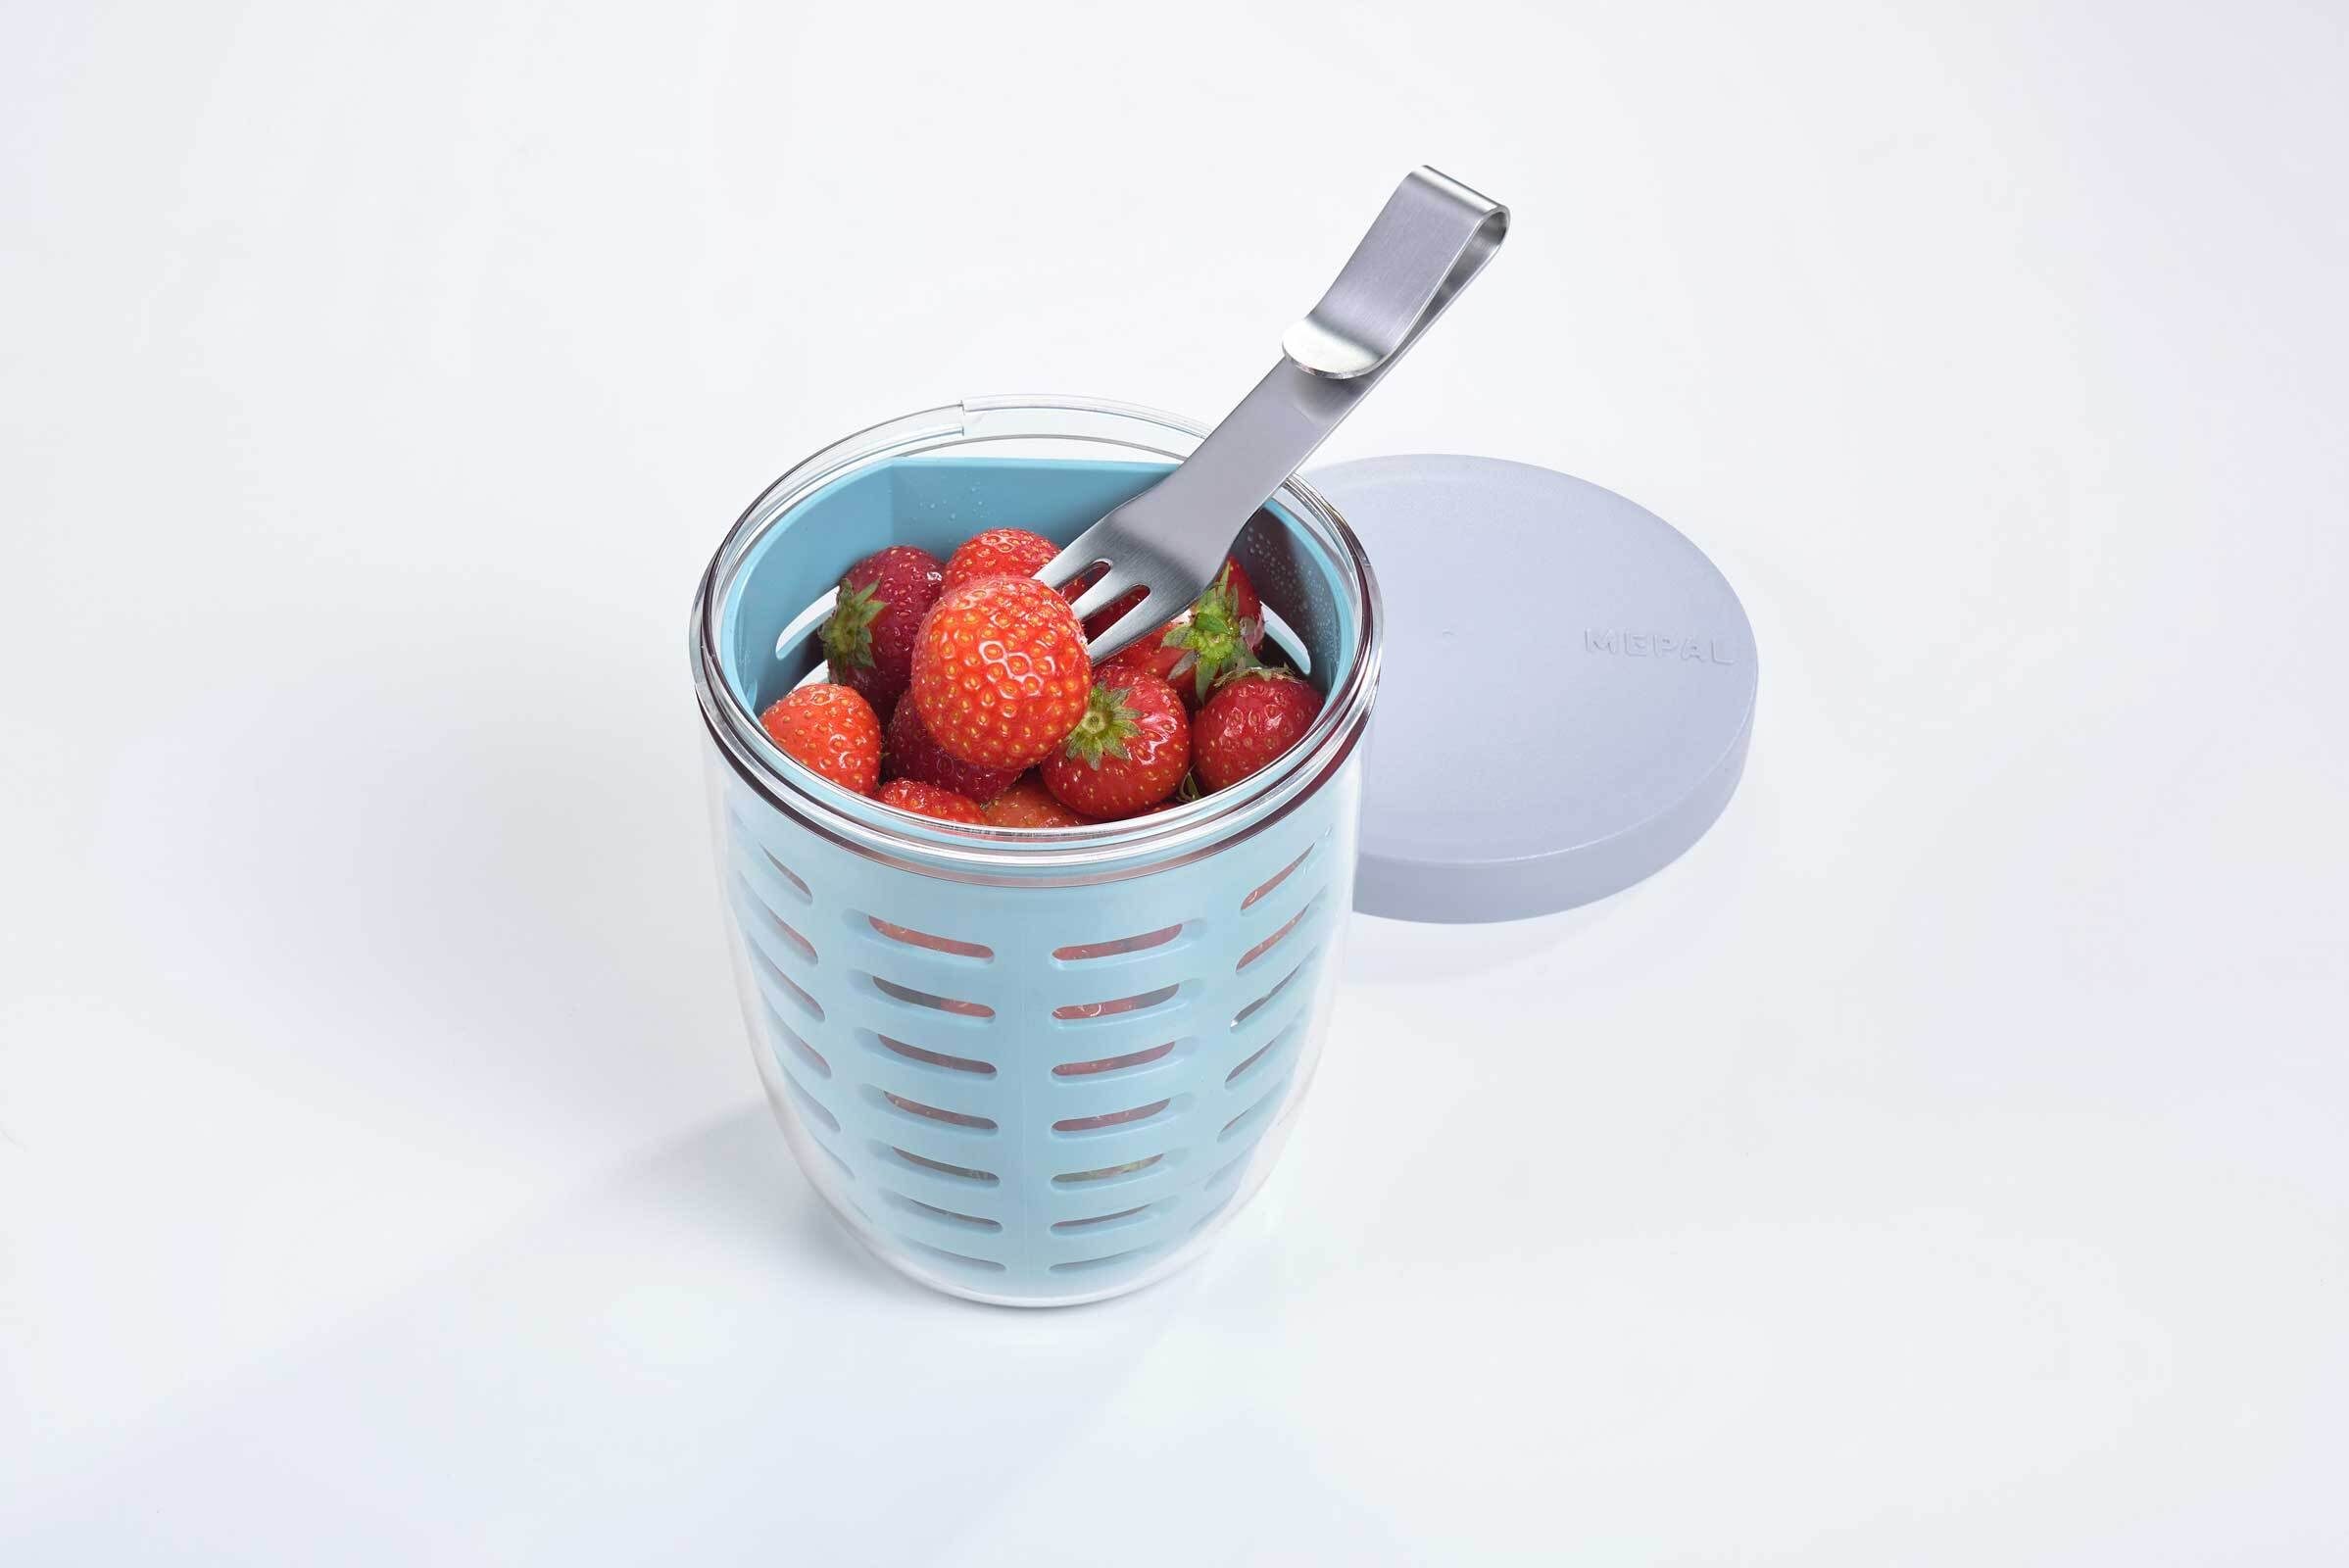 Ellipse Kunststoff, Pink Nordic ml, 600 spülmaschinenfest Fruitpot (1-tlg), Lunchbox Mepal